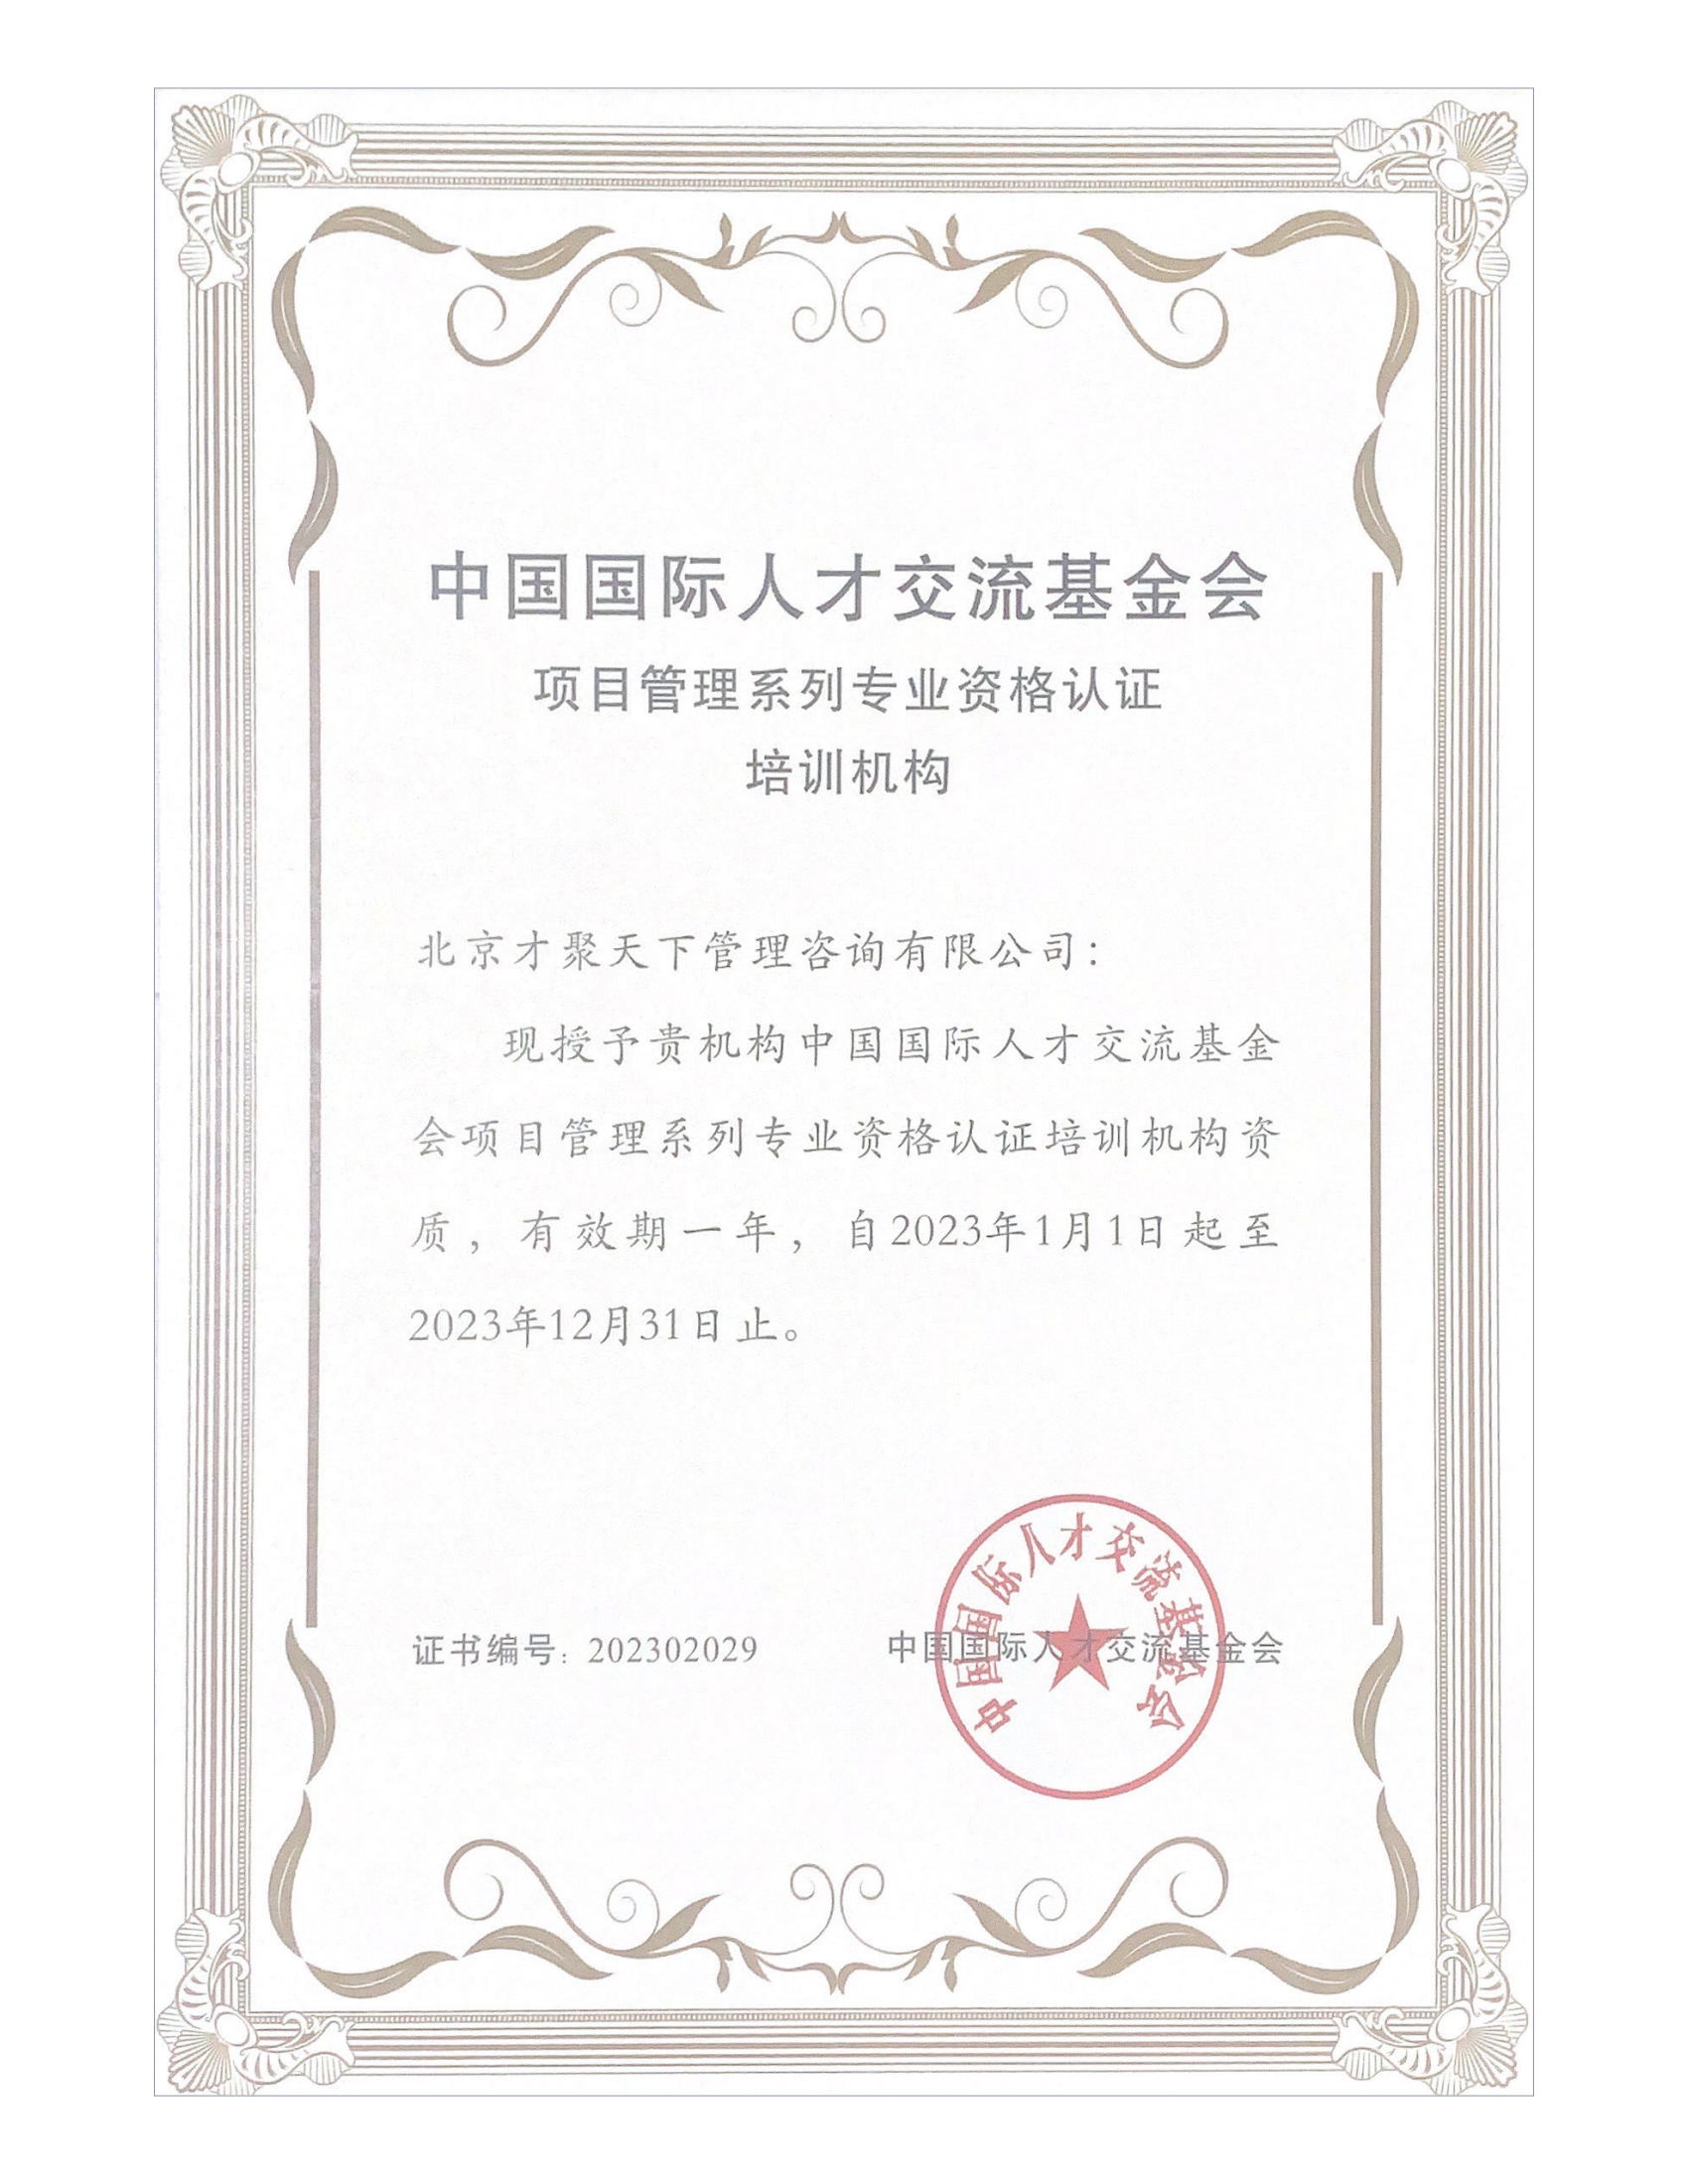 北京地区授权培训机构证书